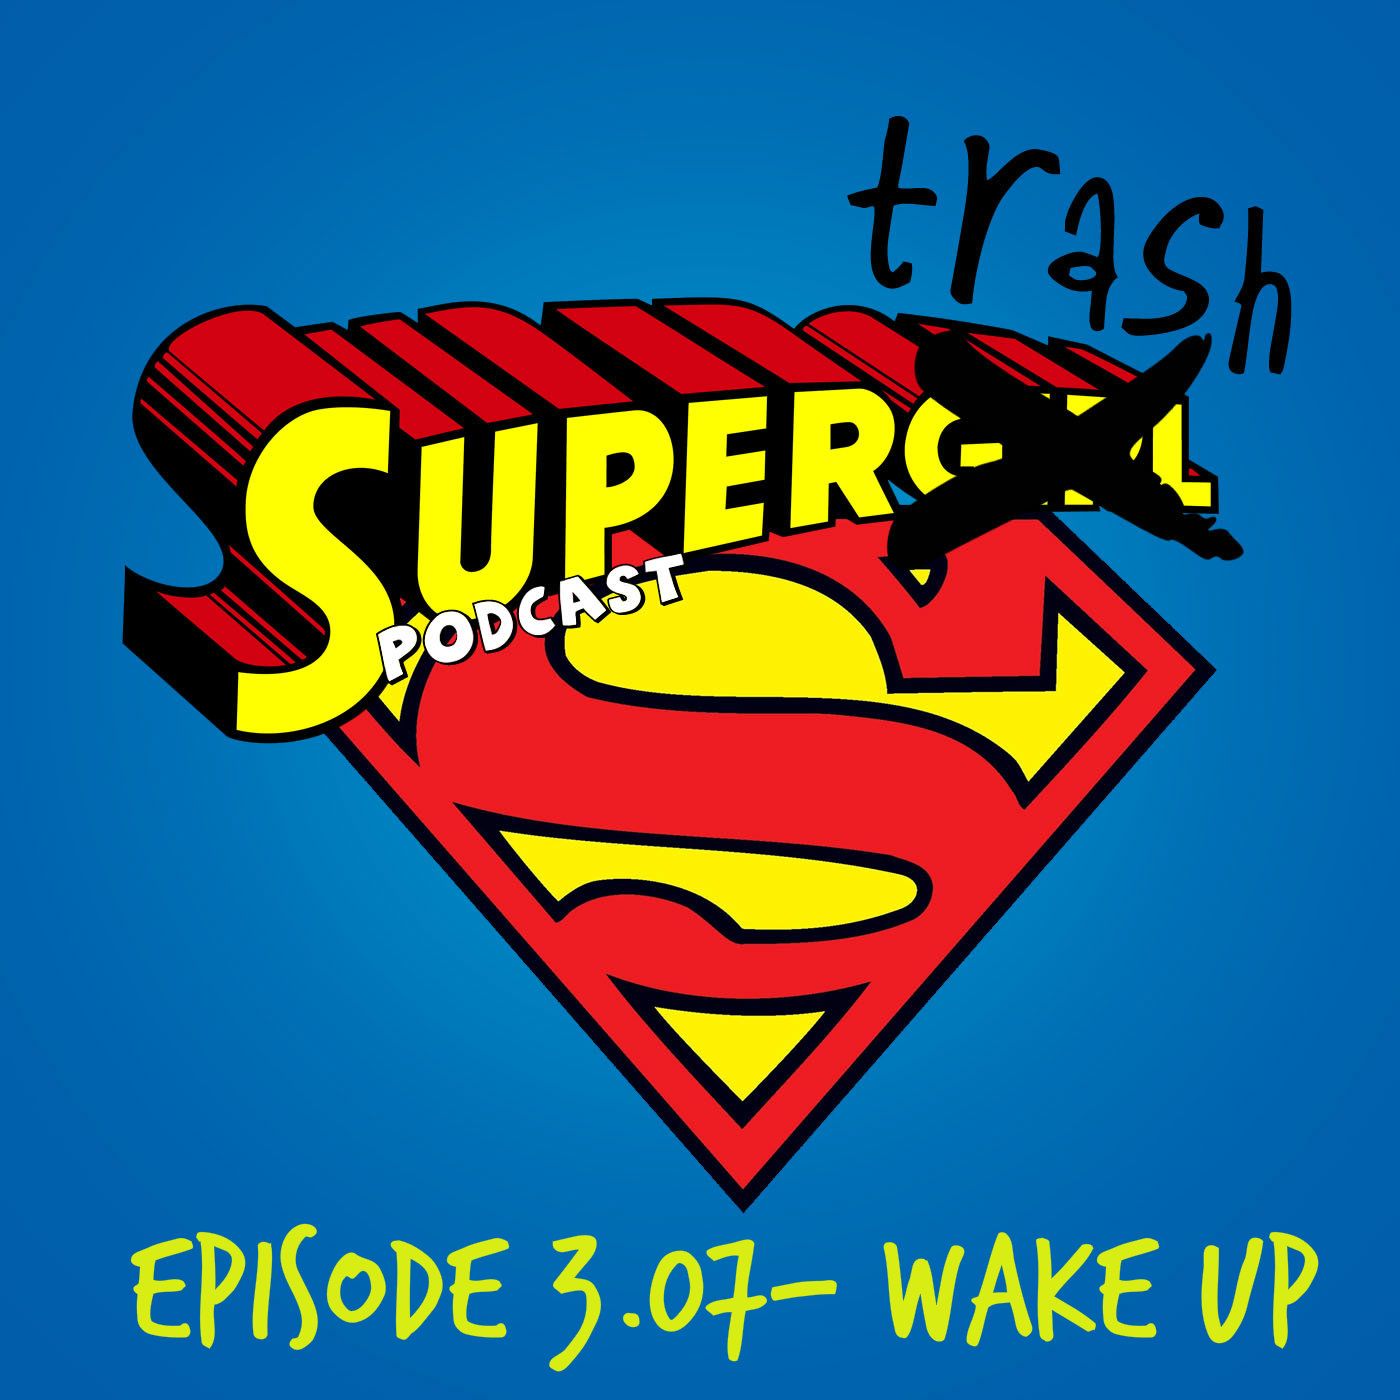 ’Supergirl’ Episode 3.07- ”Wake Up”